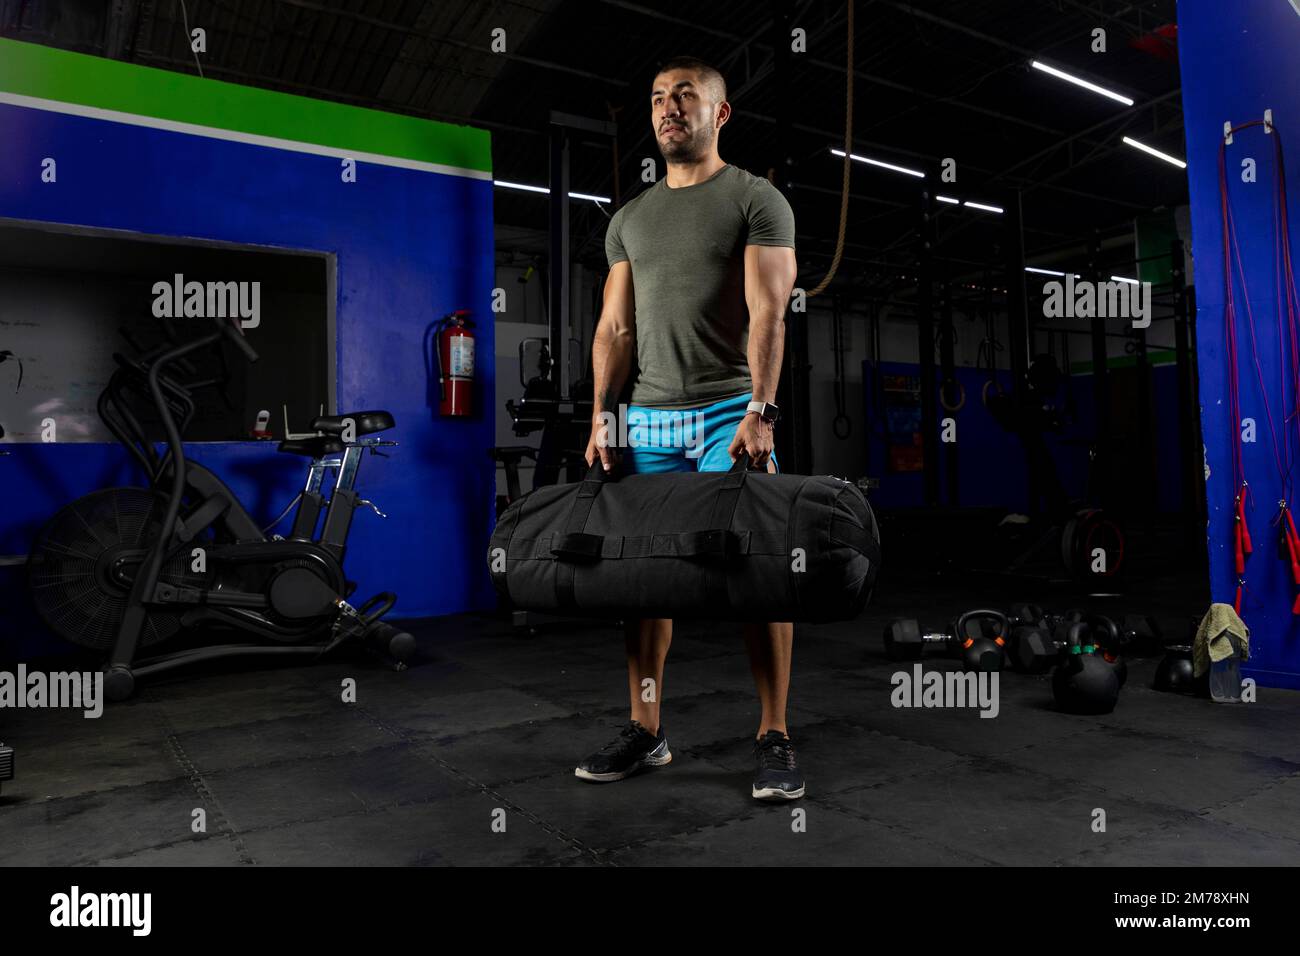 Männlicher Sportler, der Sportbekleidung trägt, in einem Fitnessstudio steht und einen Sandsack hält Stockfoto